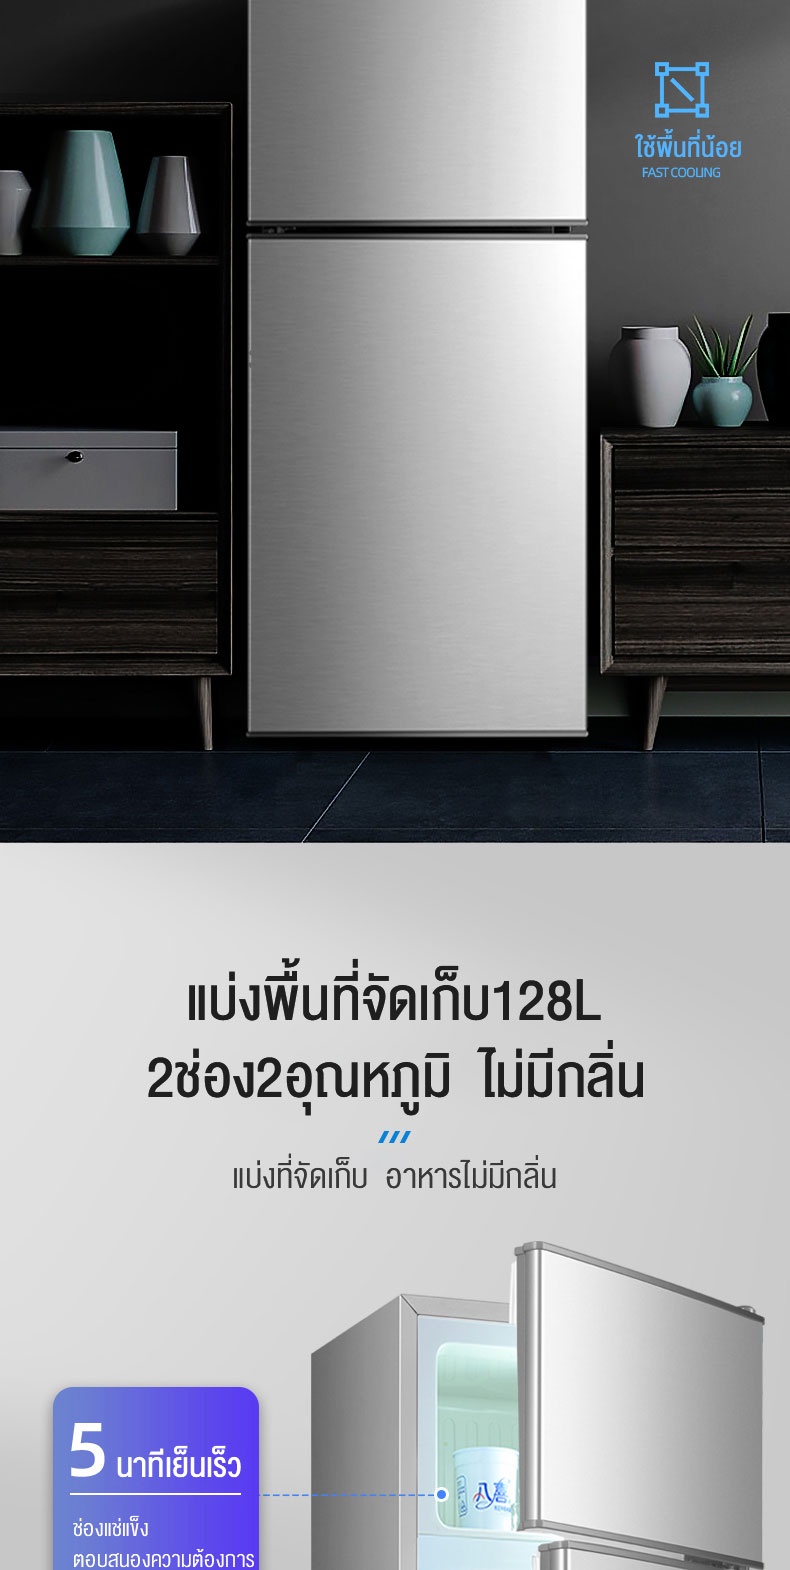 ข้อมูลเพิ่มเติมของ Biaowang ตู้เย็น 2 ประตู 161Lตู้เย็นที่บ้าน ตู้เย็นสองประตู เสียงรบกวนต่ำและประหยัดพลังงาน ตู้เย็นอพาร์ทเมนท์ 4.2Qความจุ